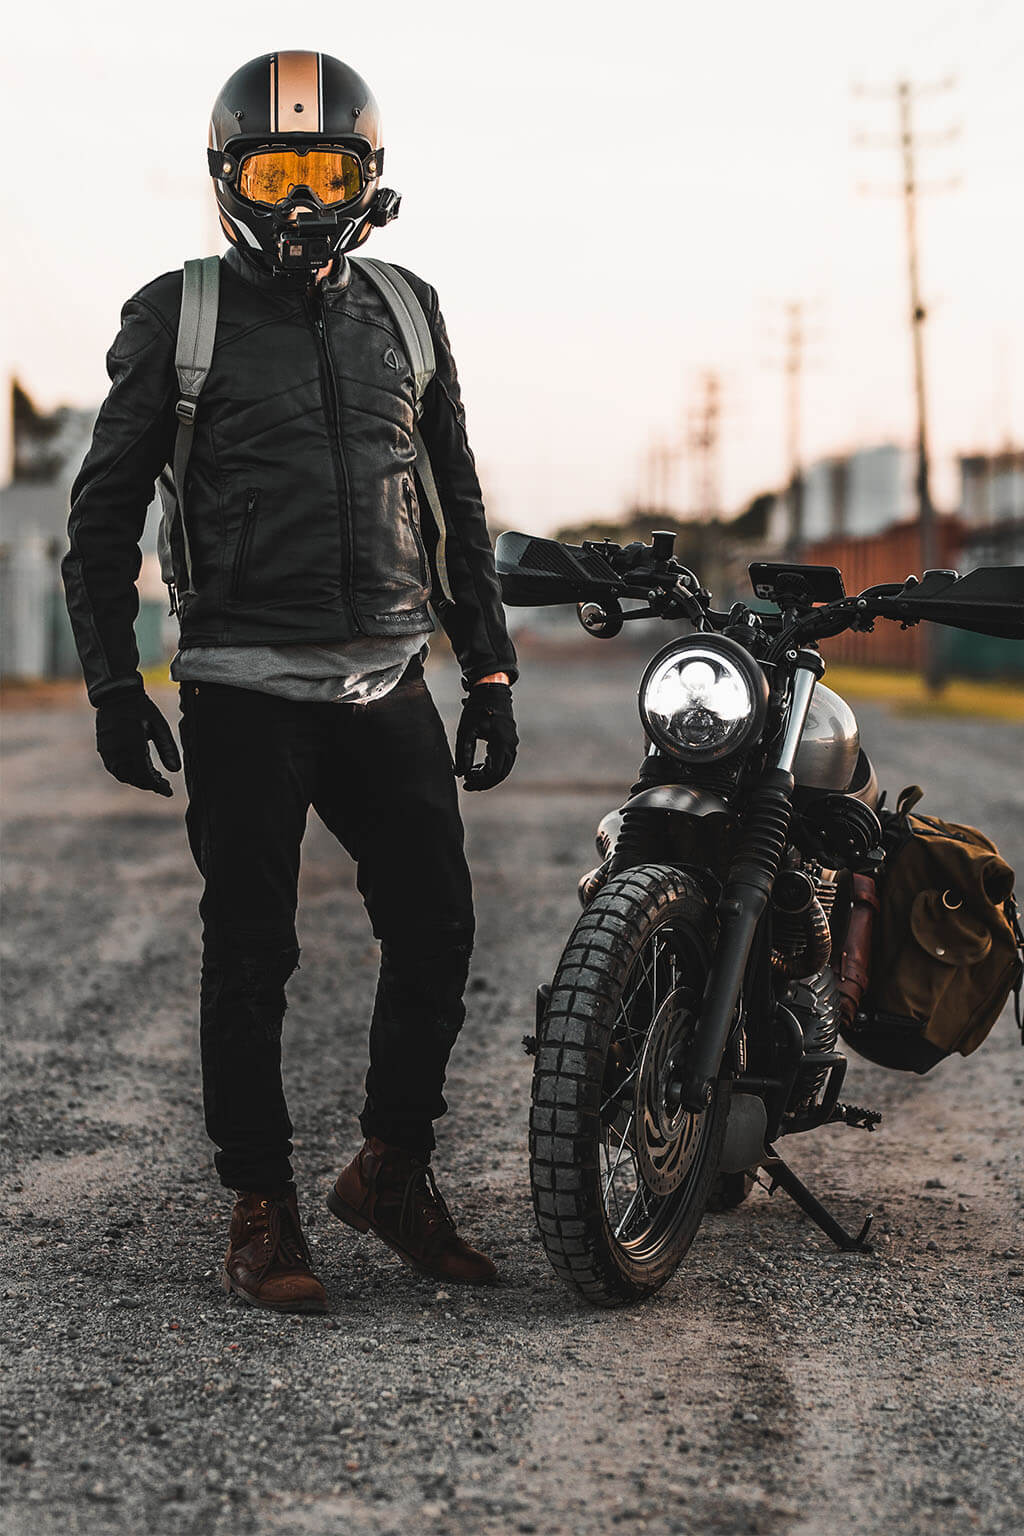 300 Retro Biker ideas  motorcycle gear riding gear motorcycle helmets